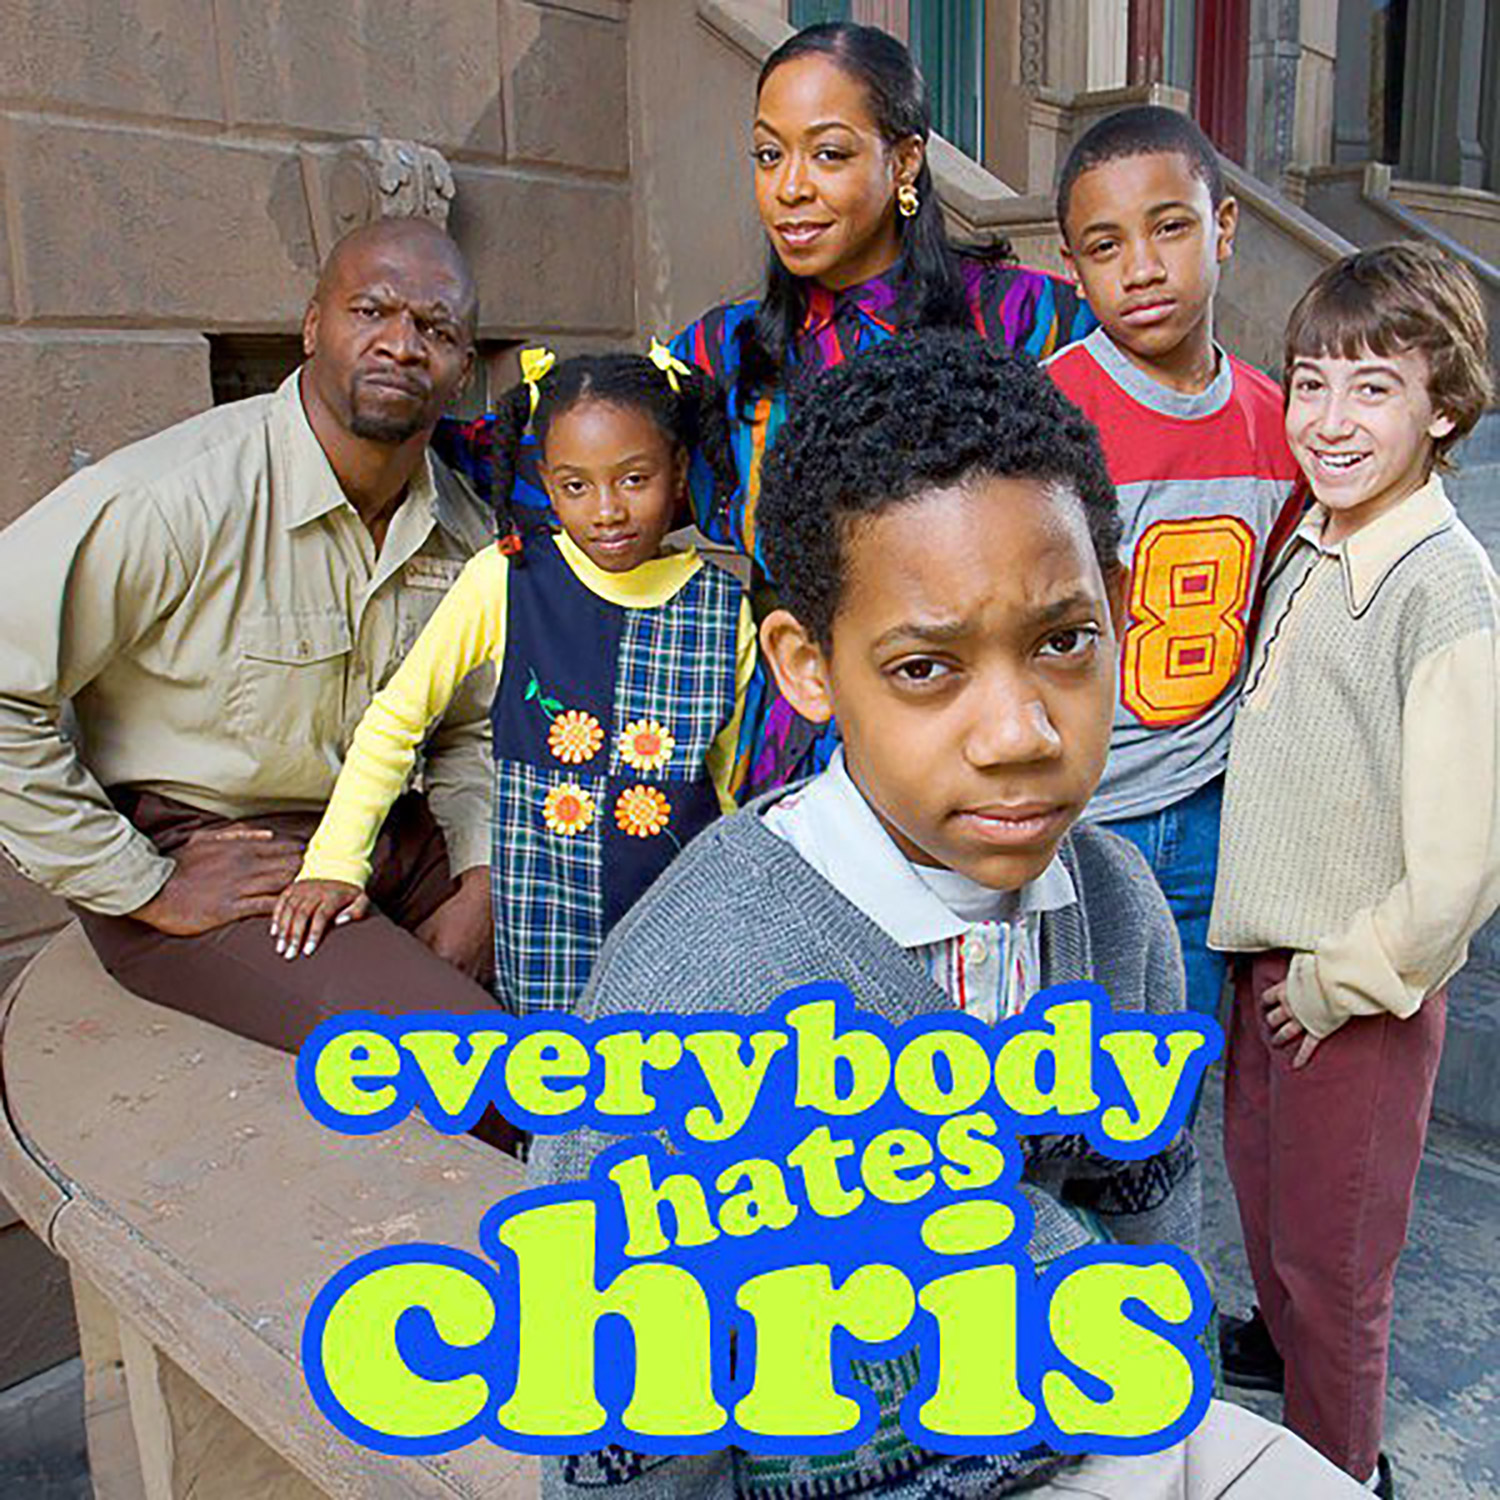 everybody hates chris meme